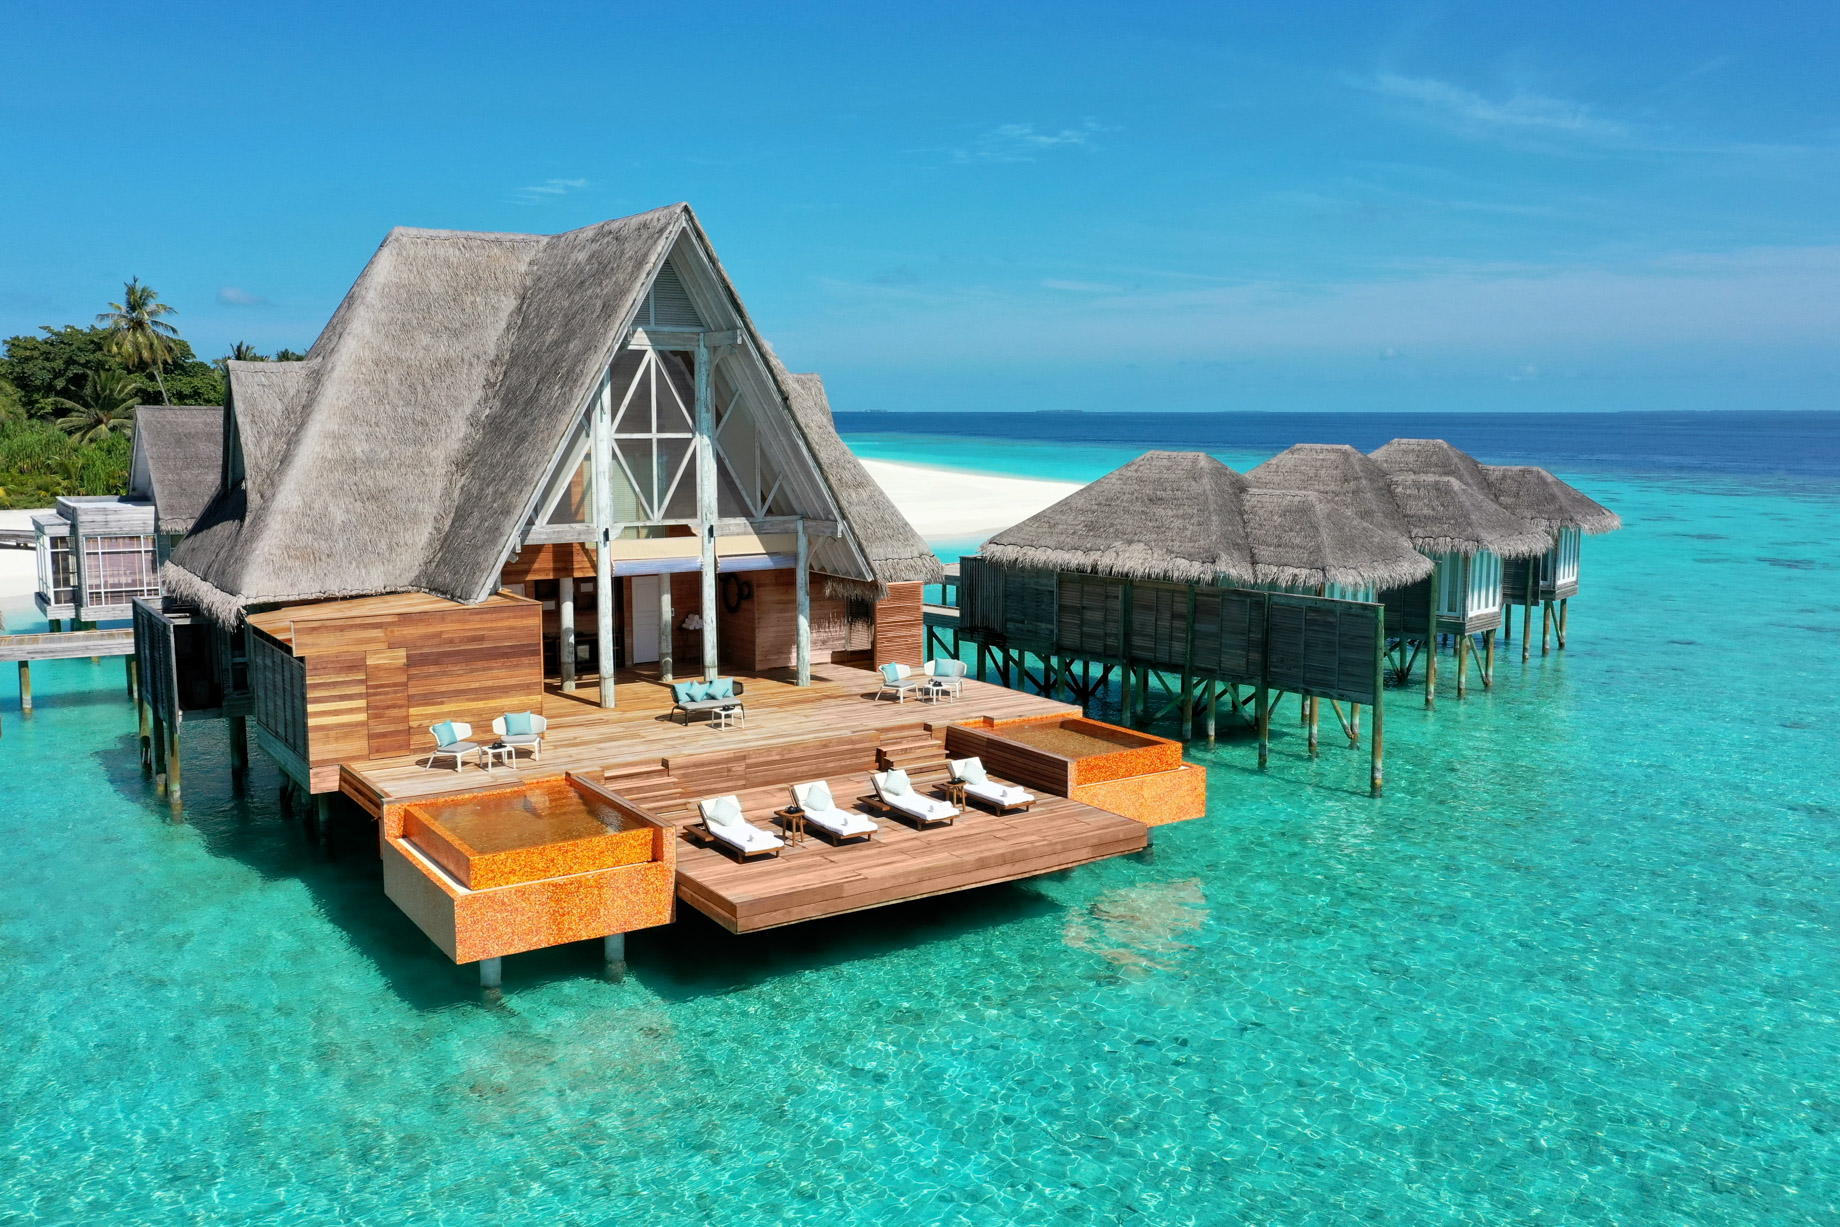 Anantara Kihavah Maldives Villas Resort – Baa Atoll, Maldives – Spa Aerial View